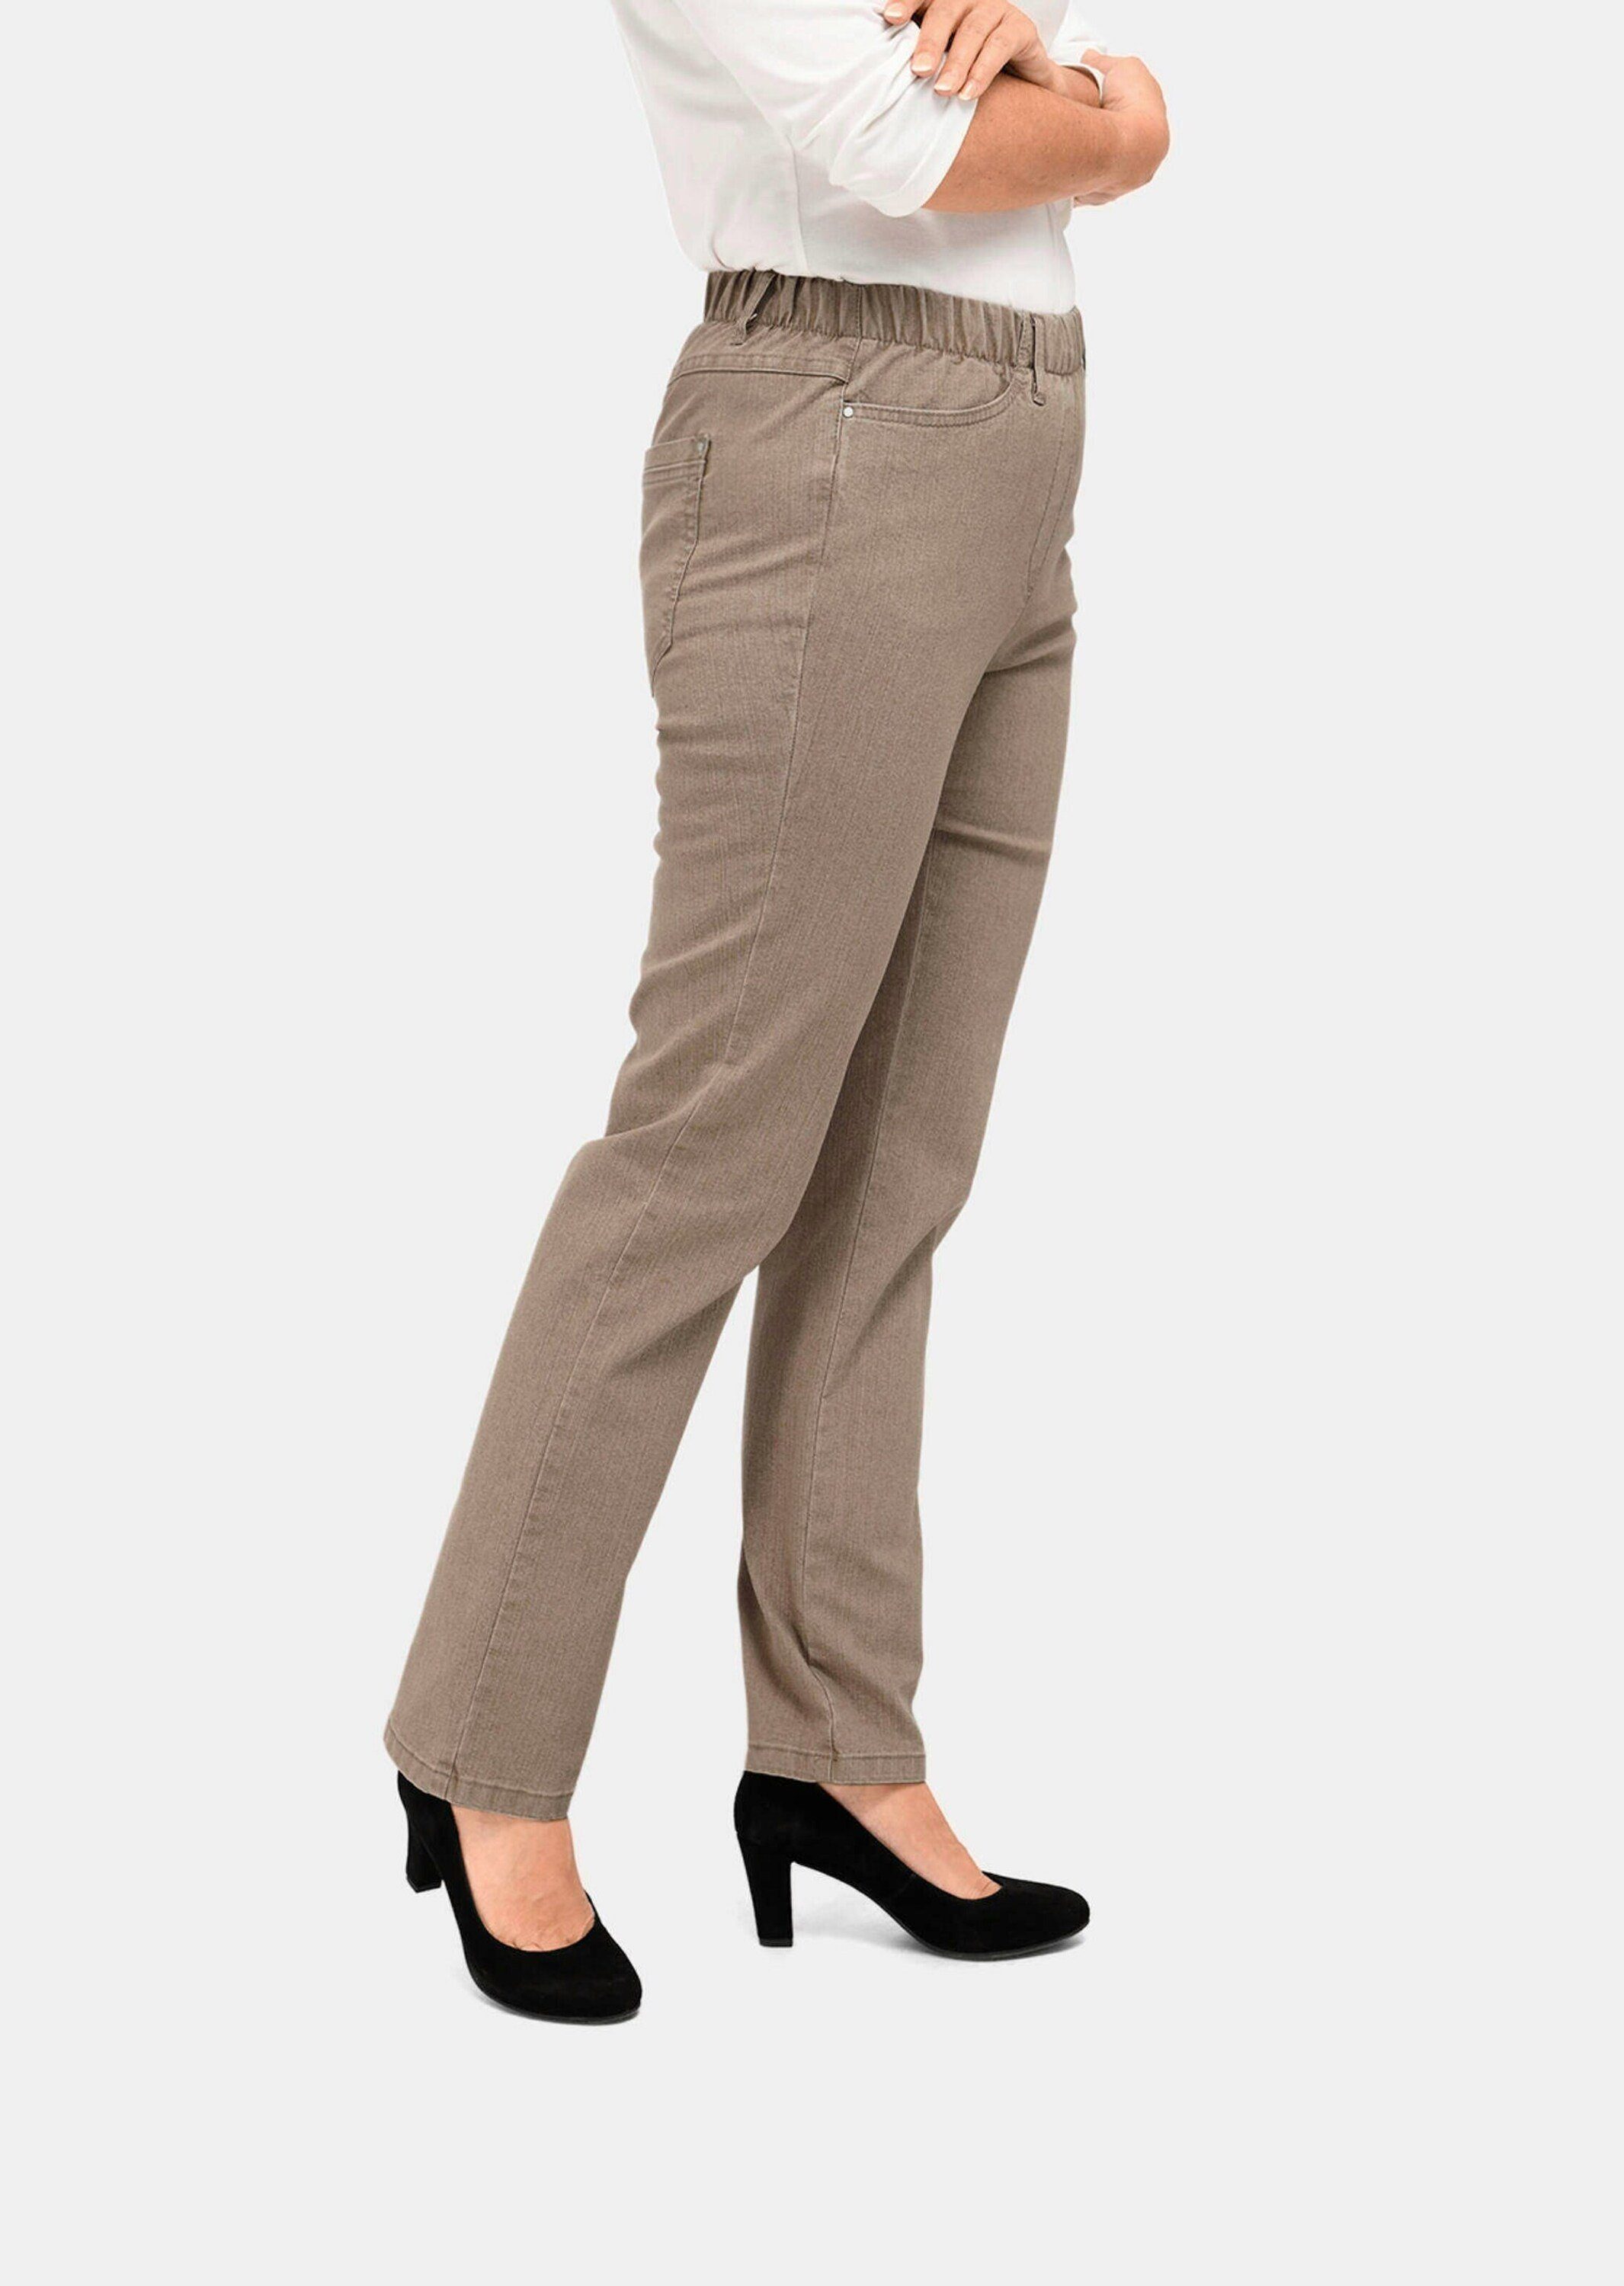 LOUISA Bequeme GOLDNER beige Klassische Jeansschlupfhose Jeans Kurzgröße: